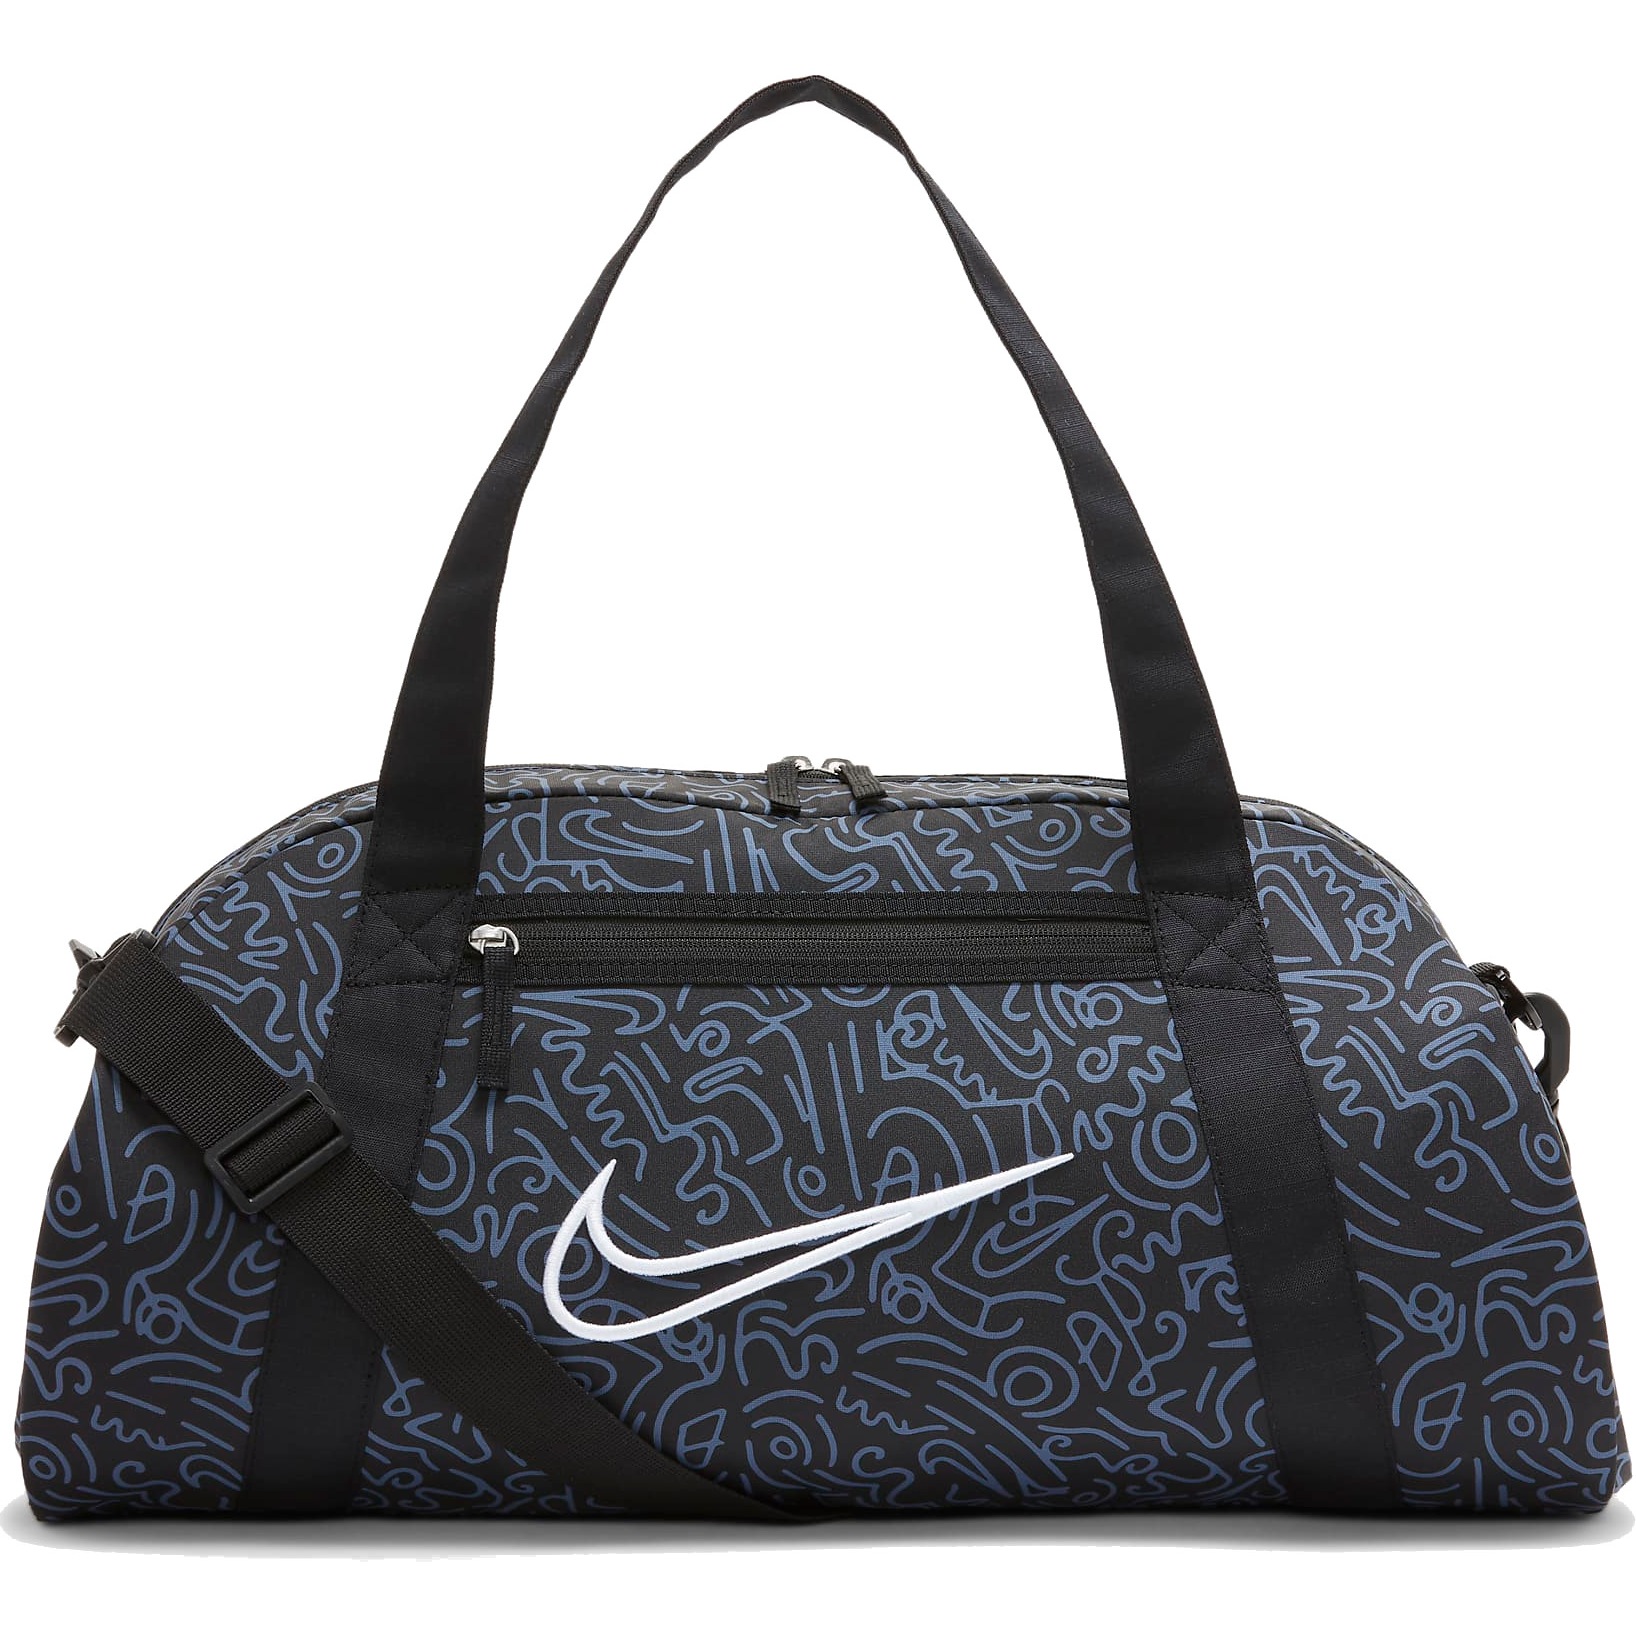 Nike Gym Club Duffel Bag (24L) - black/black/white DV6240-010 | BIKE24